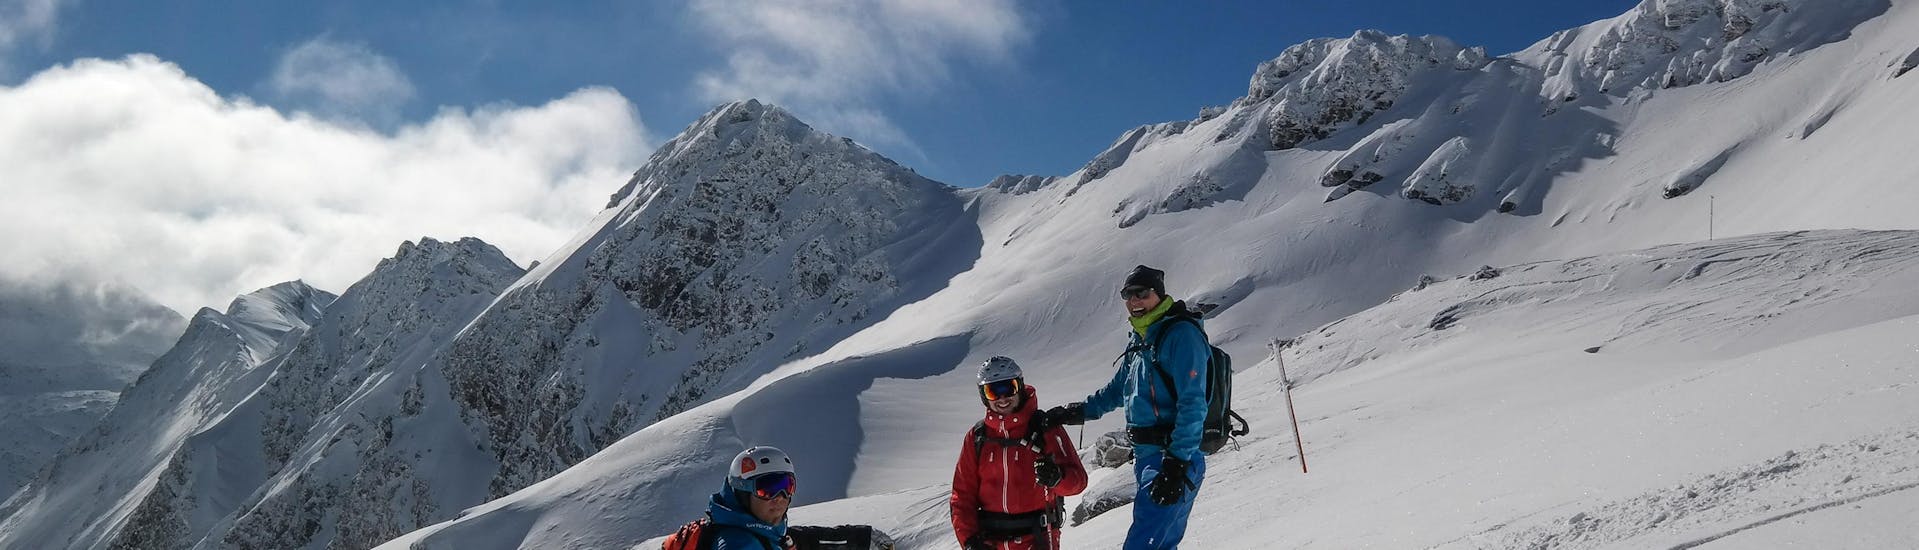 Scialpinismo privato per tutti i livelli con Ski School Snowsports Gastein.